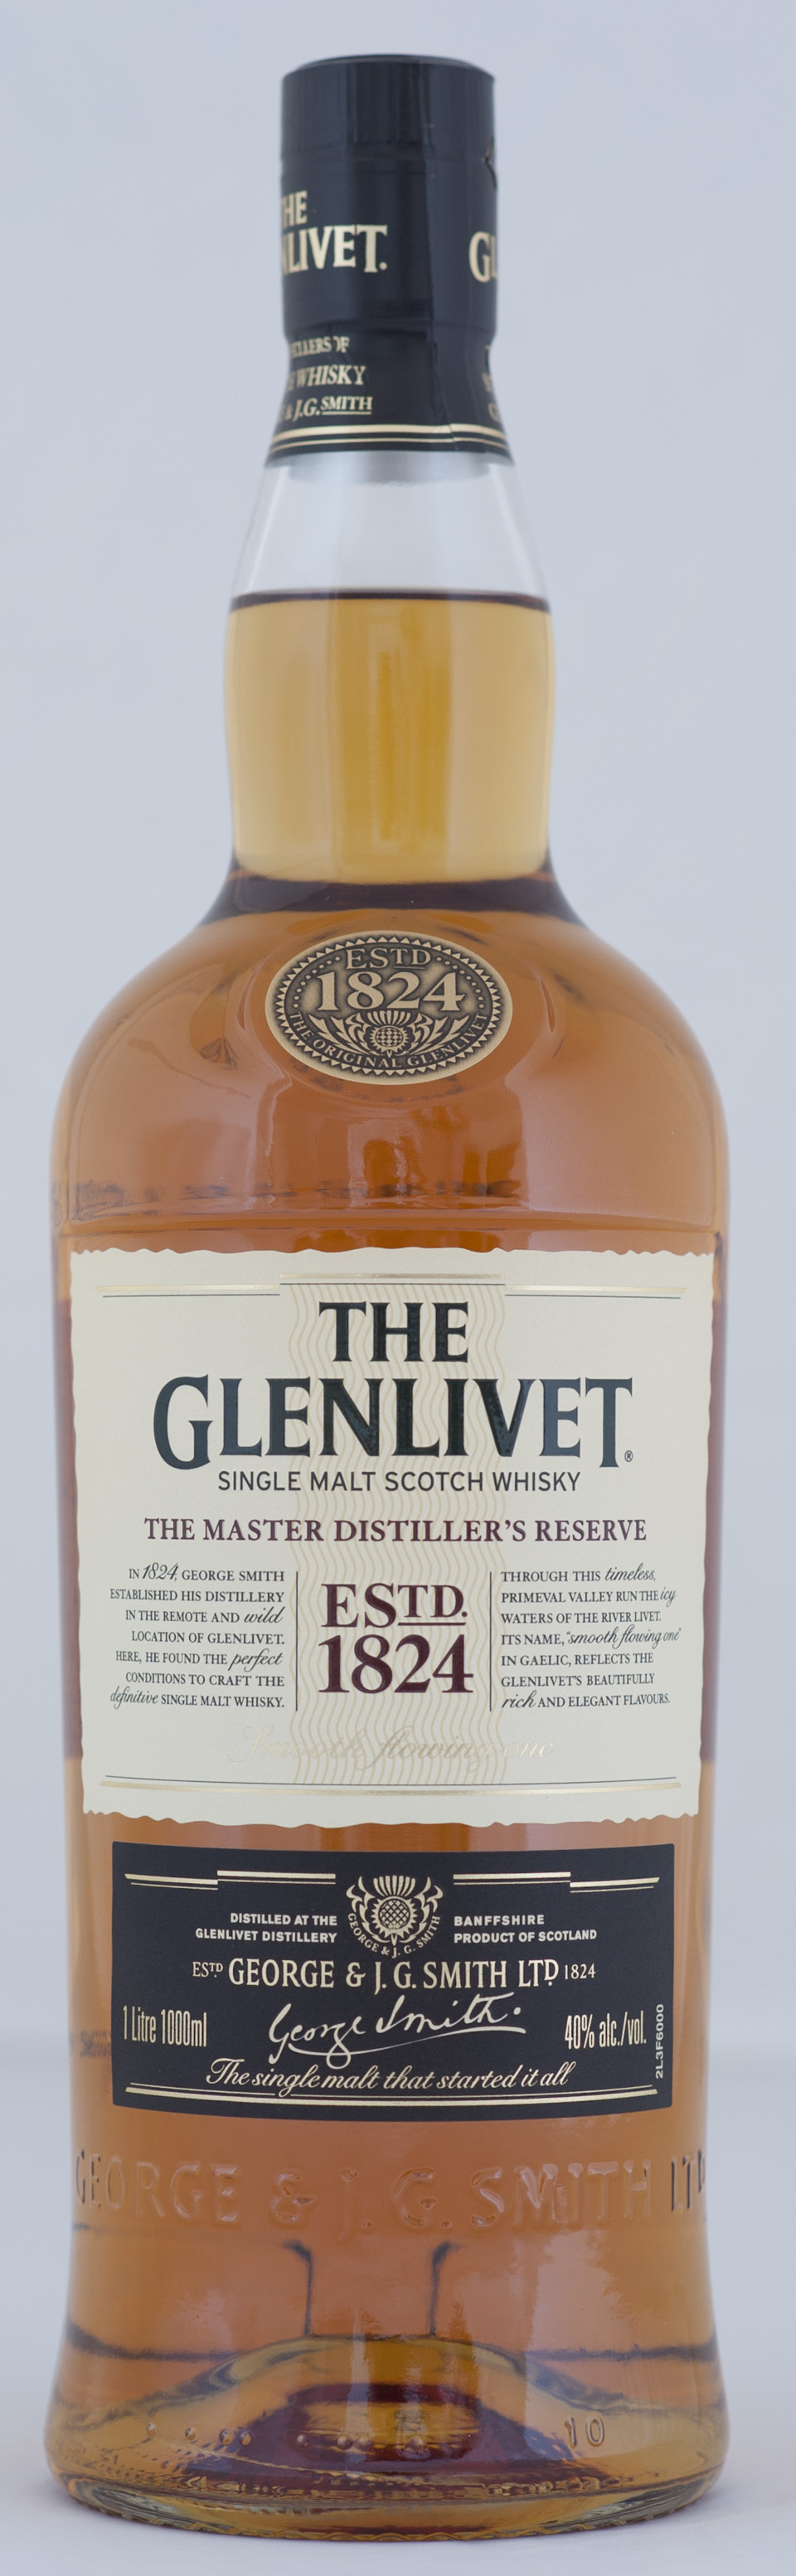 Billede: _DSC5603 The Glenlivet - The Master Distiller's Reserve - bottle.jpg